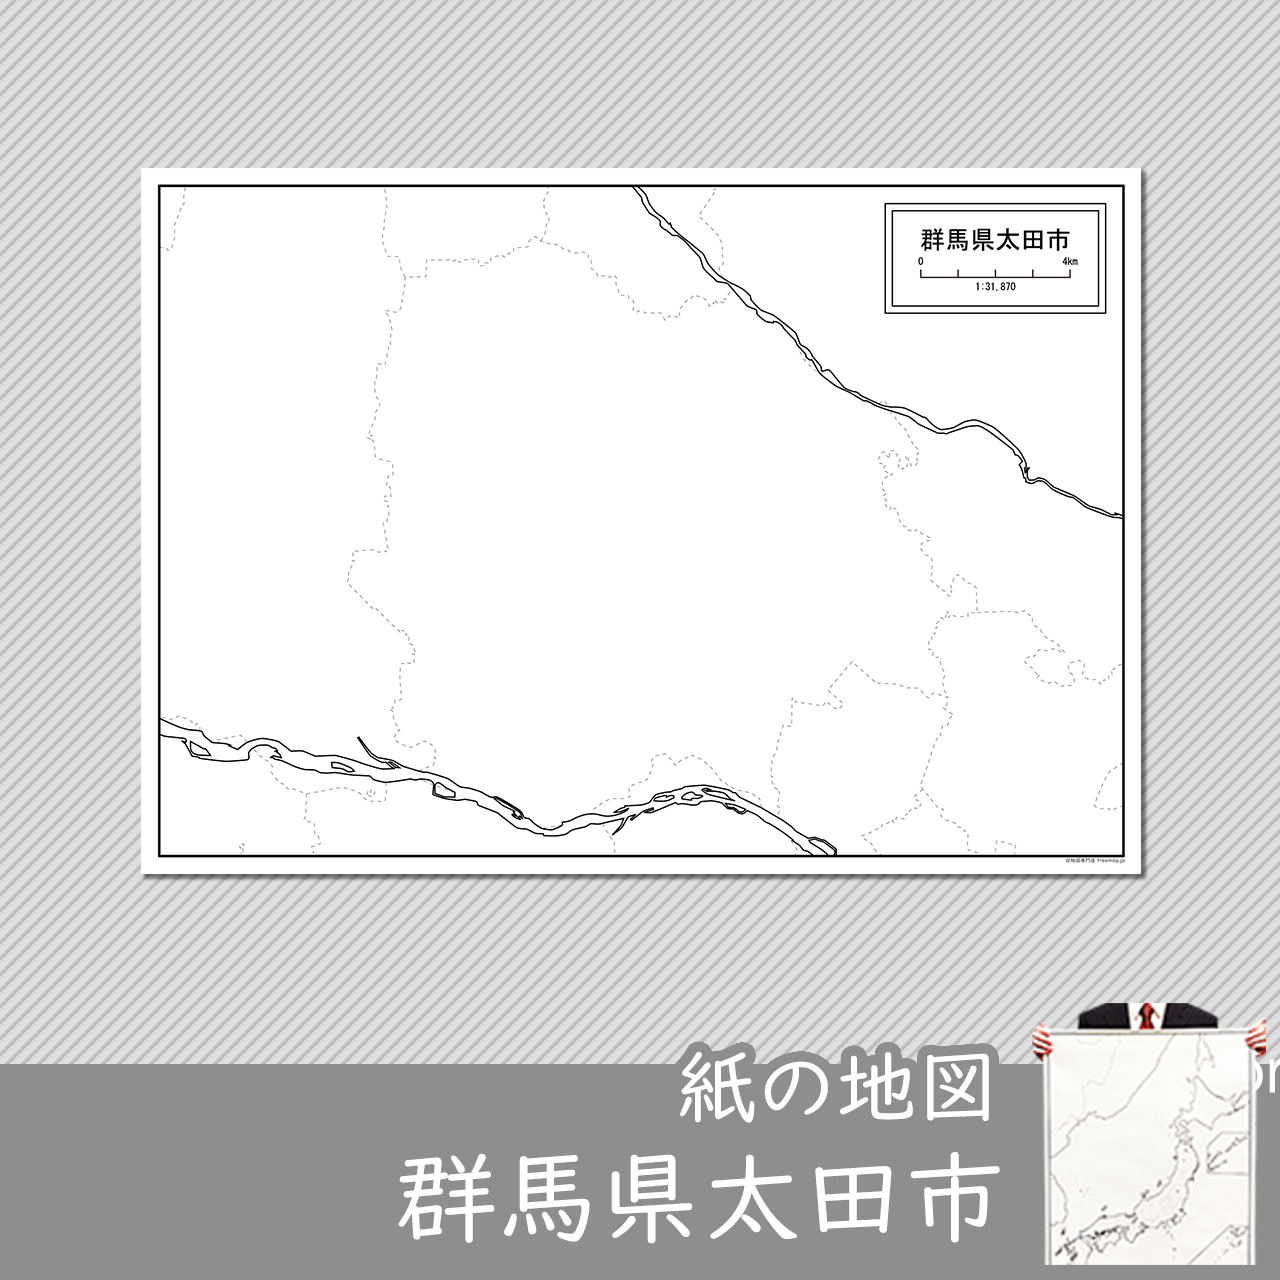 太田市の紙の白地図のサムネイル